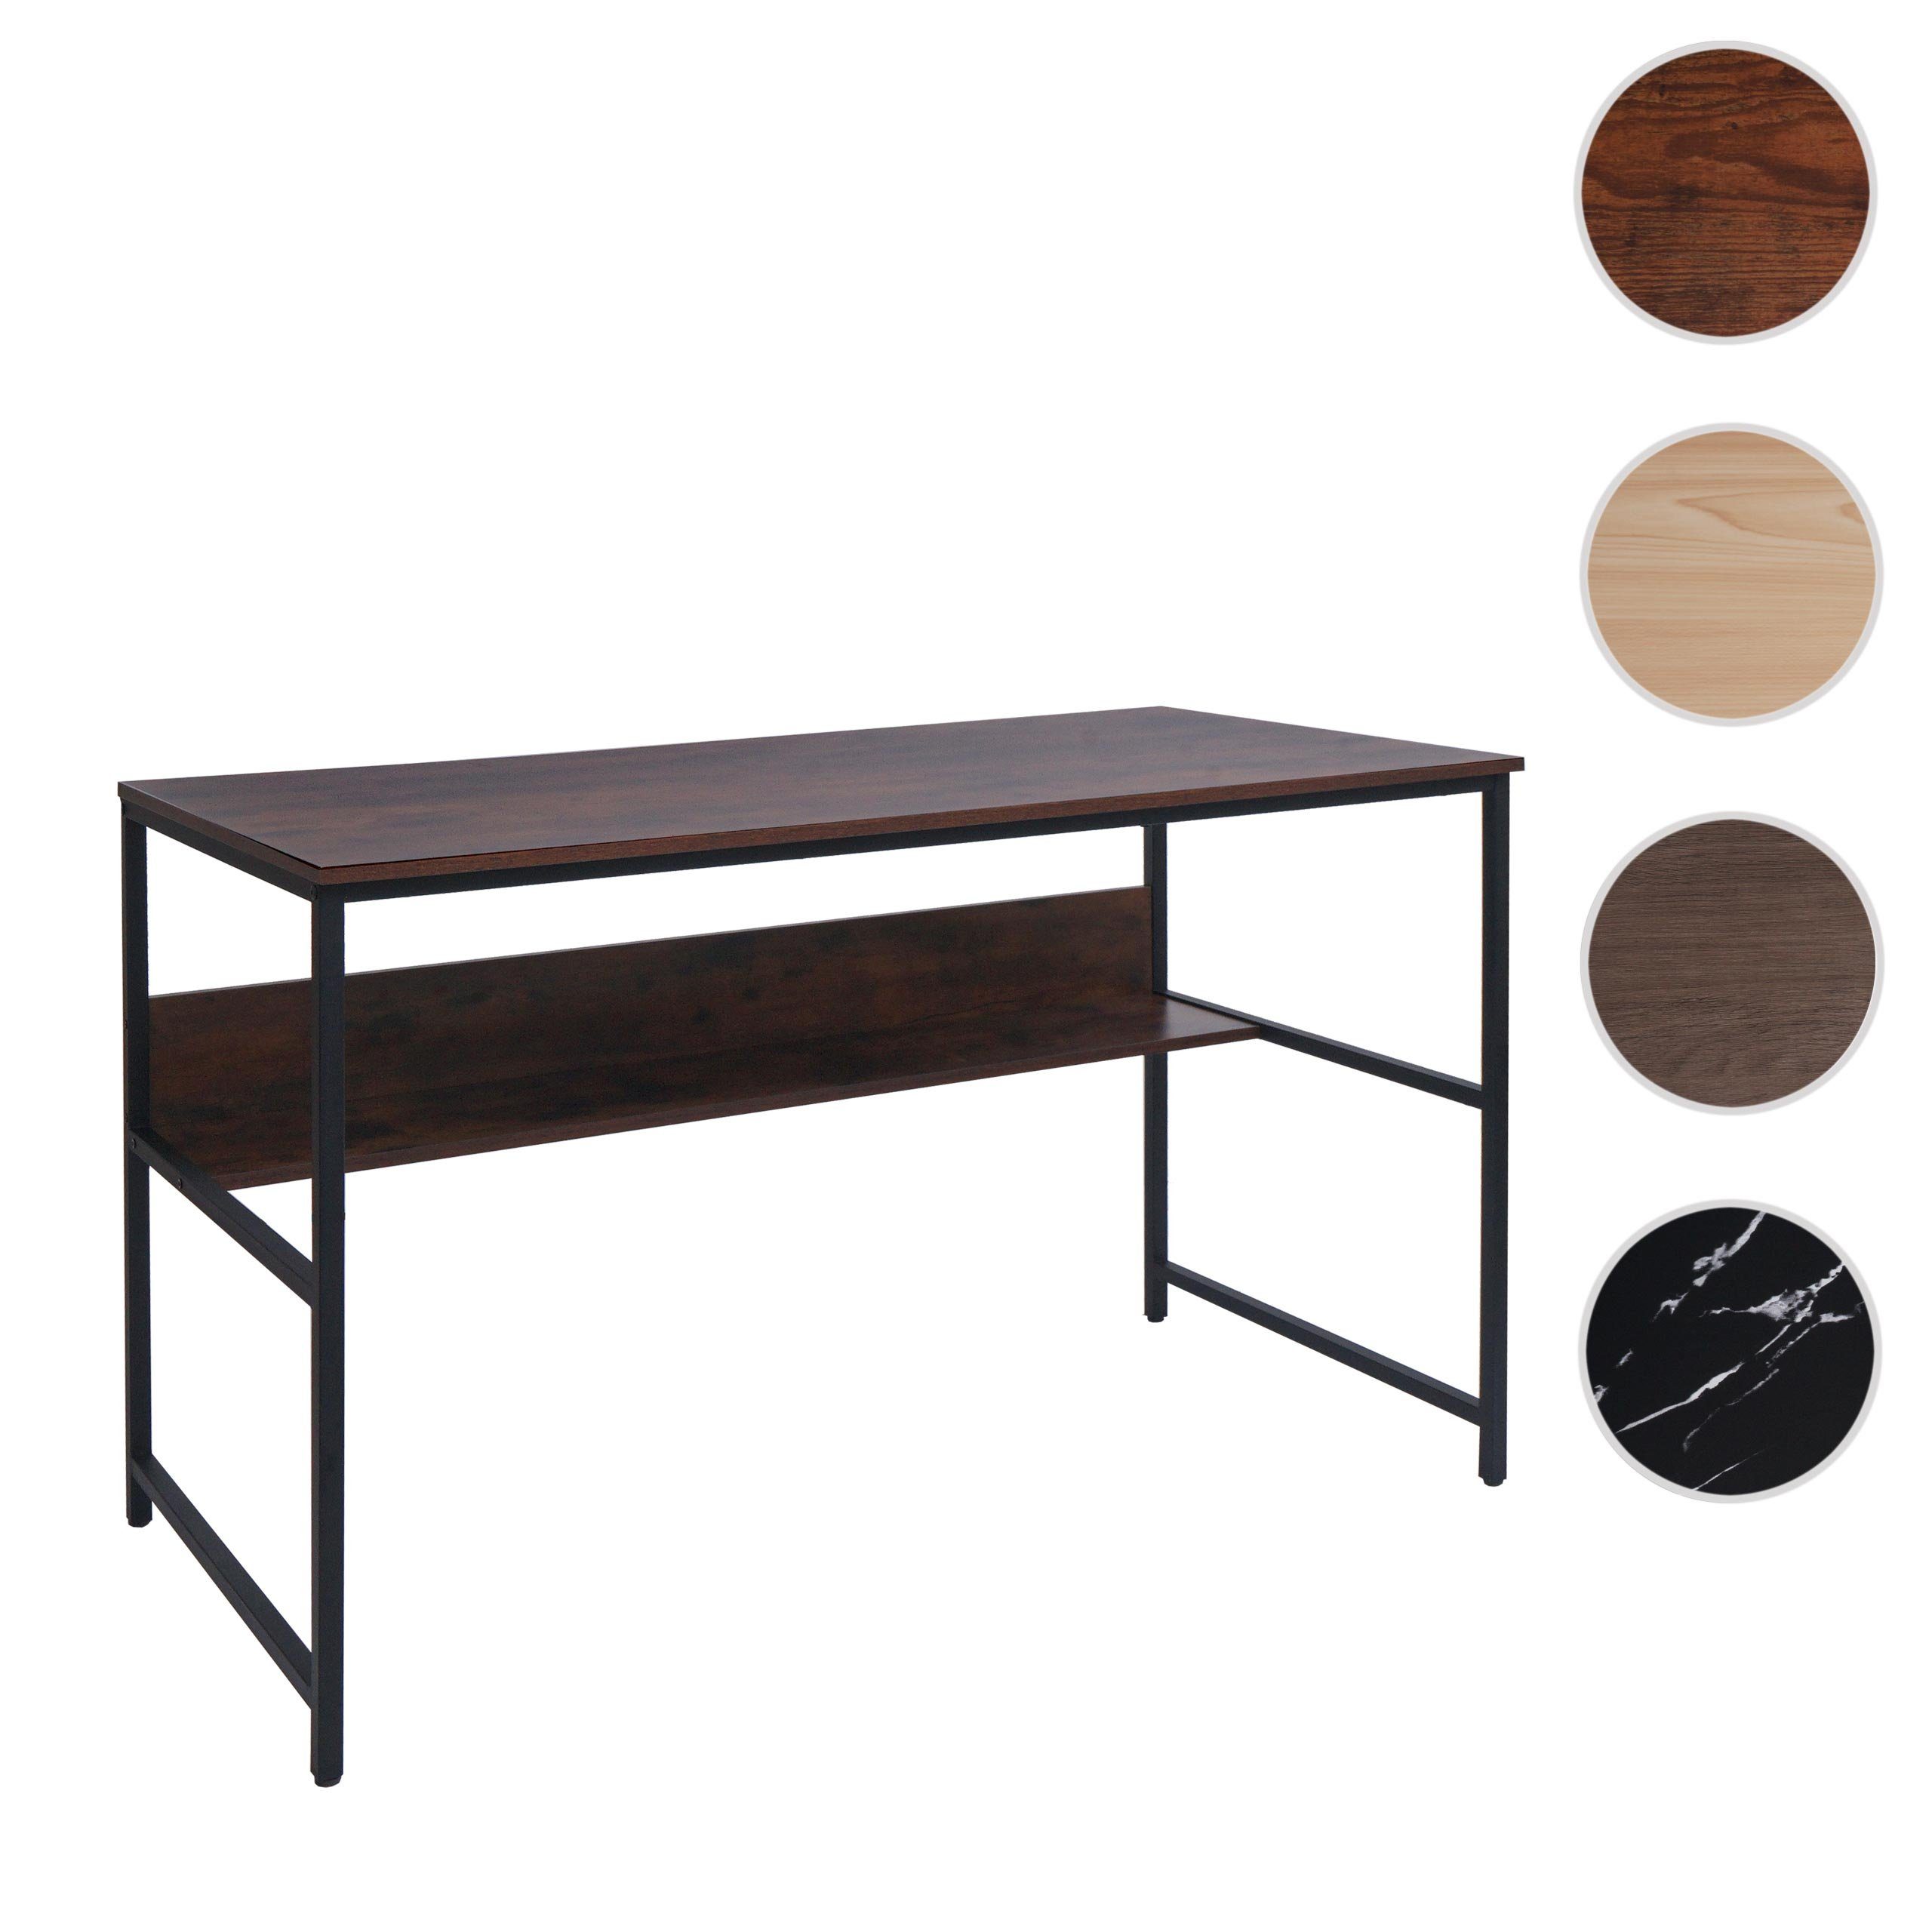 MCW Schreibtisch mit Holzoptik braun | Melaminbeschichtet MCW-K80, braun